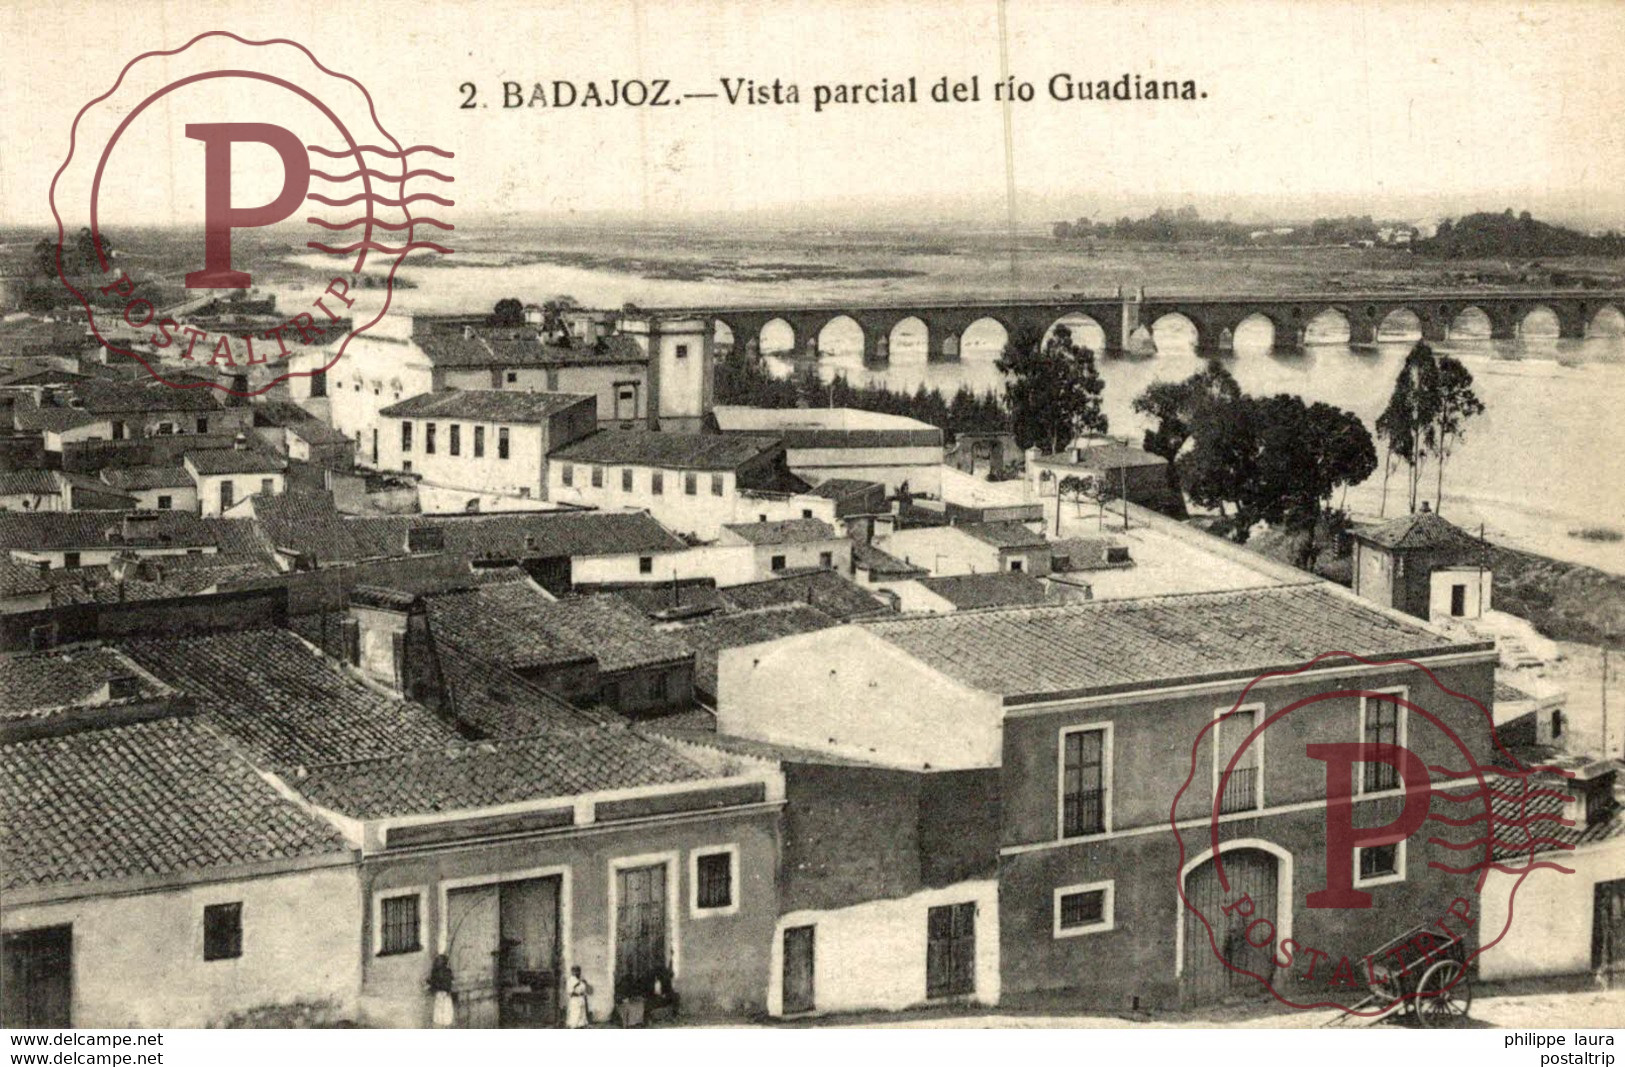 BADAJOZ. VISTA PARCIAL DEL RIO GUADIANA - Badajoz